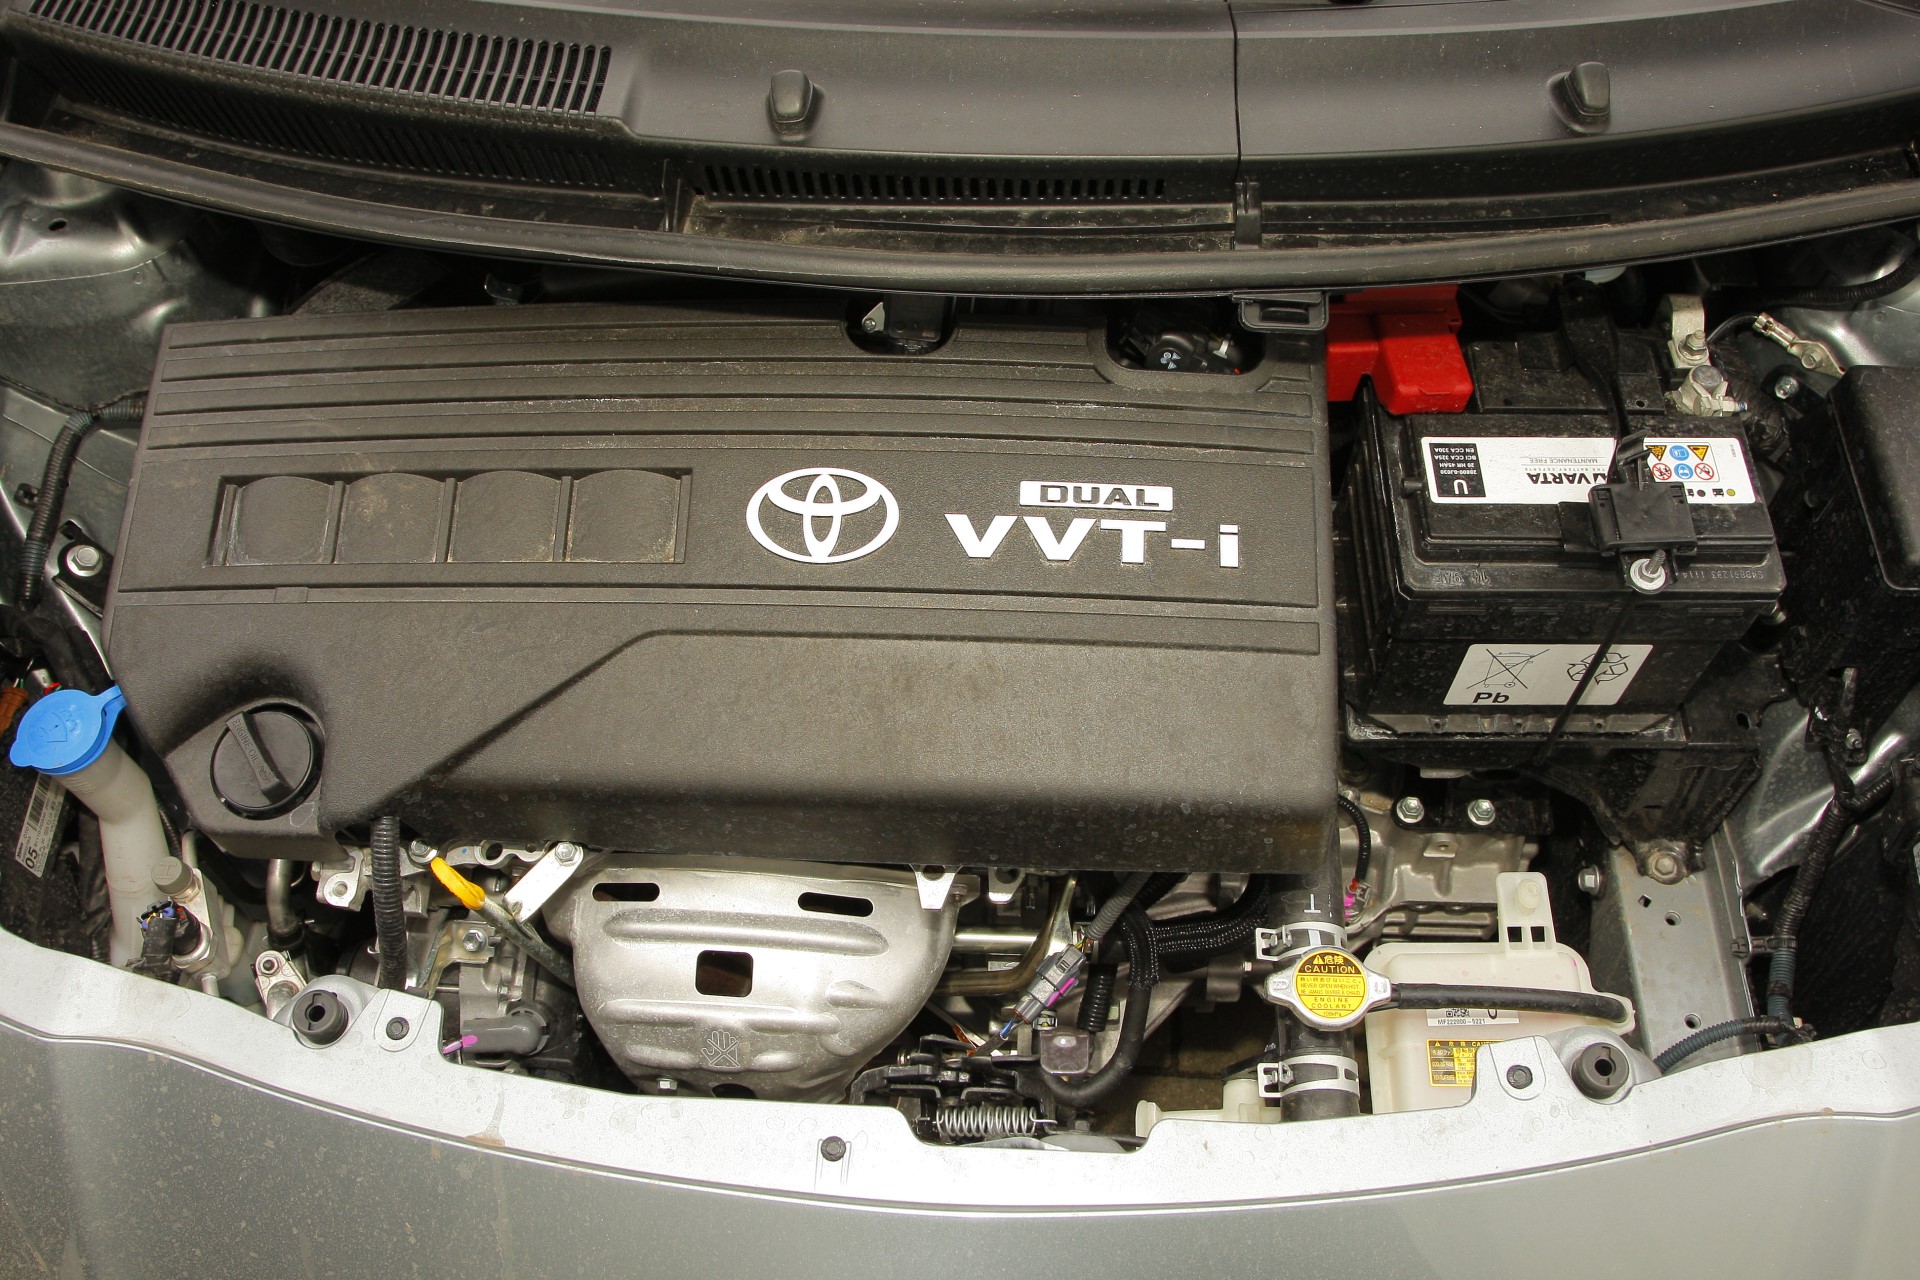 Toyota 1.33 Dual-VVT-i - opinie, zalety i wady